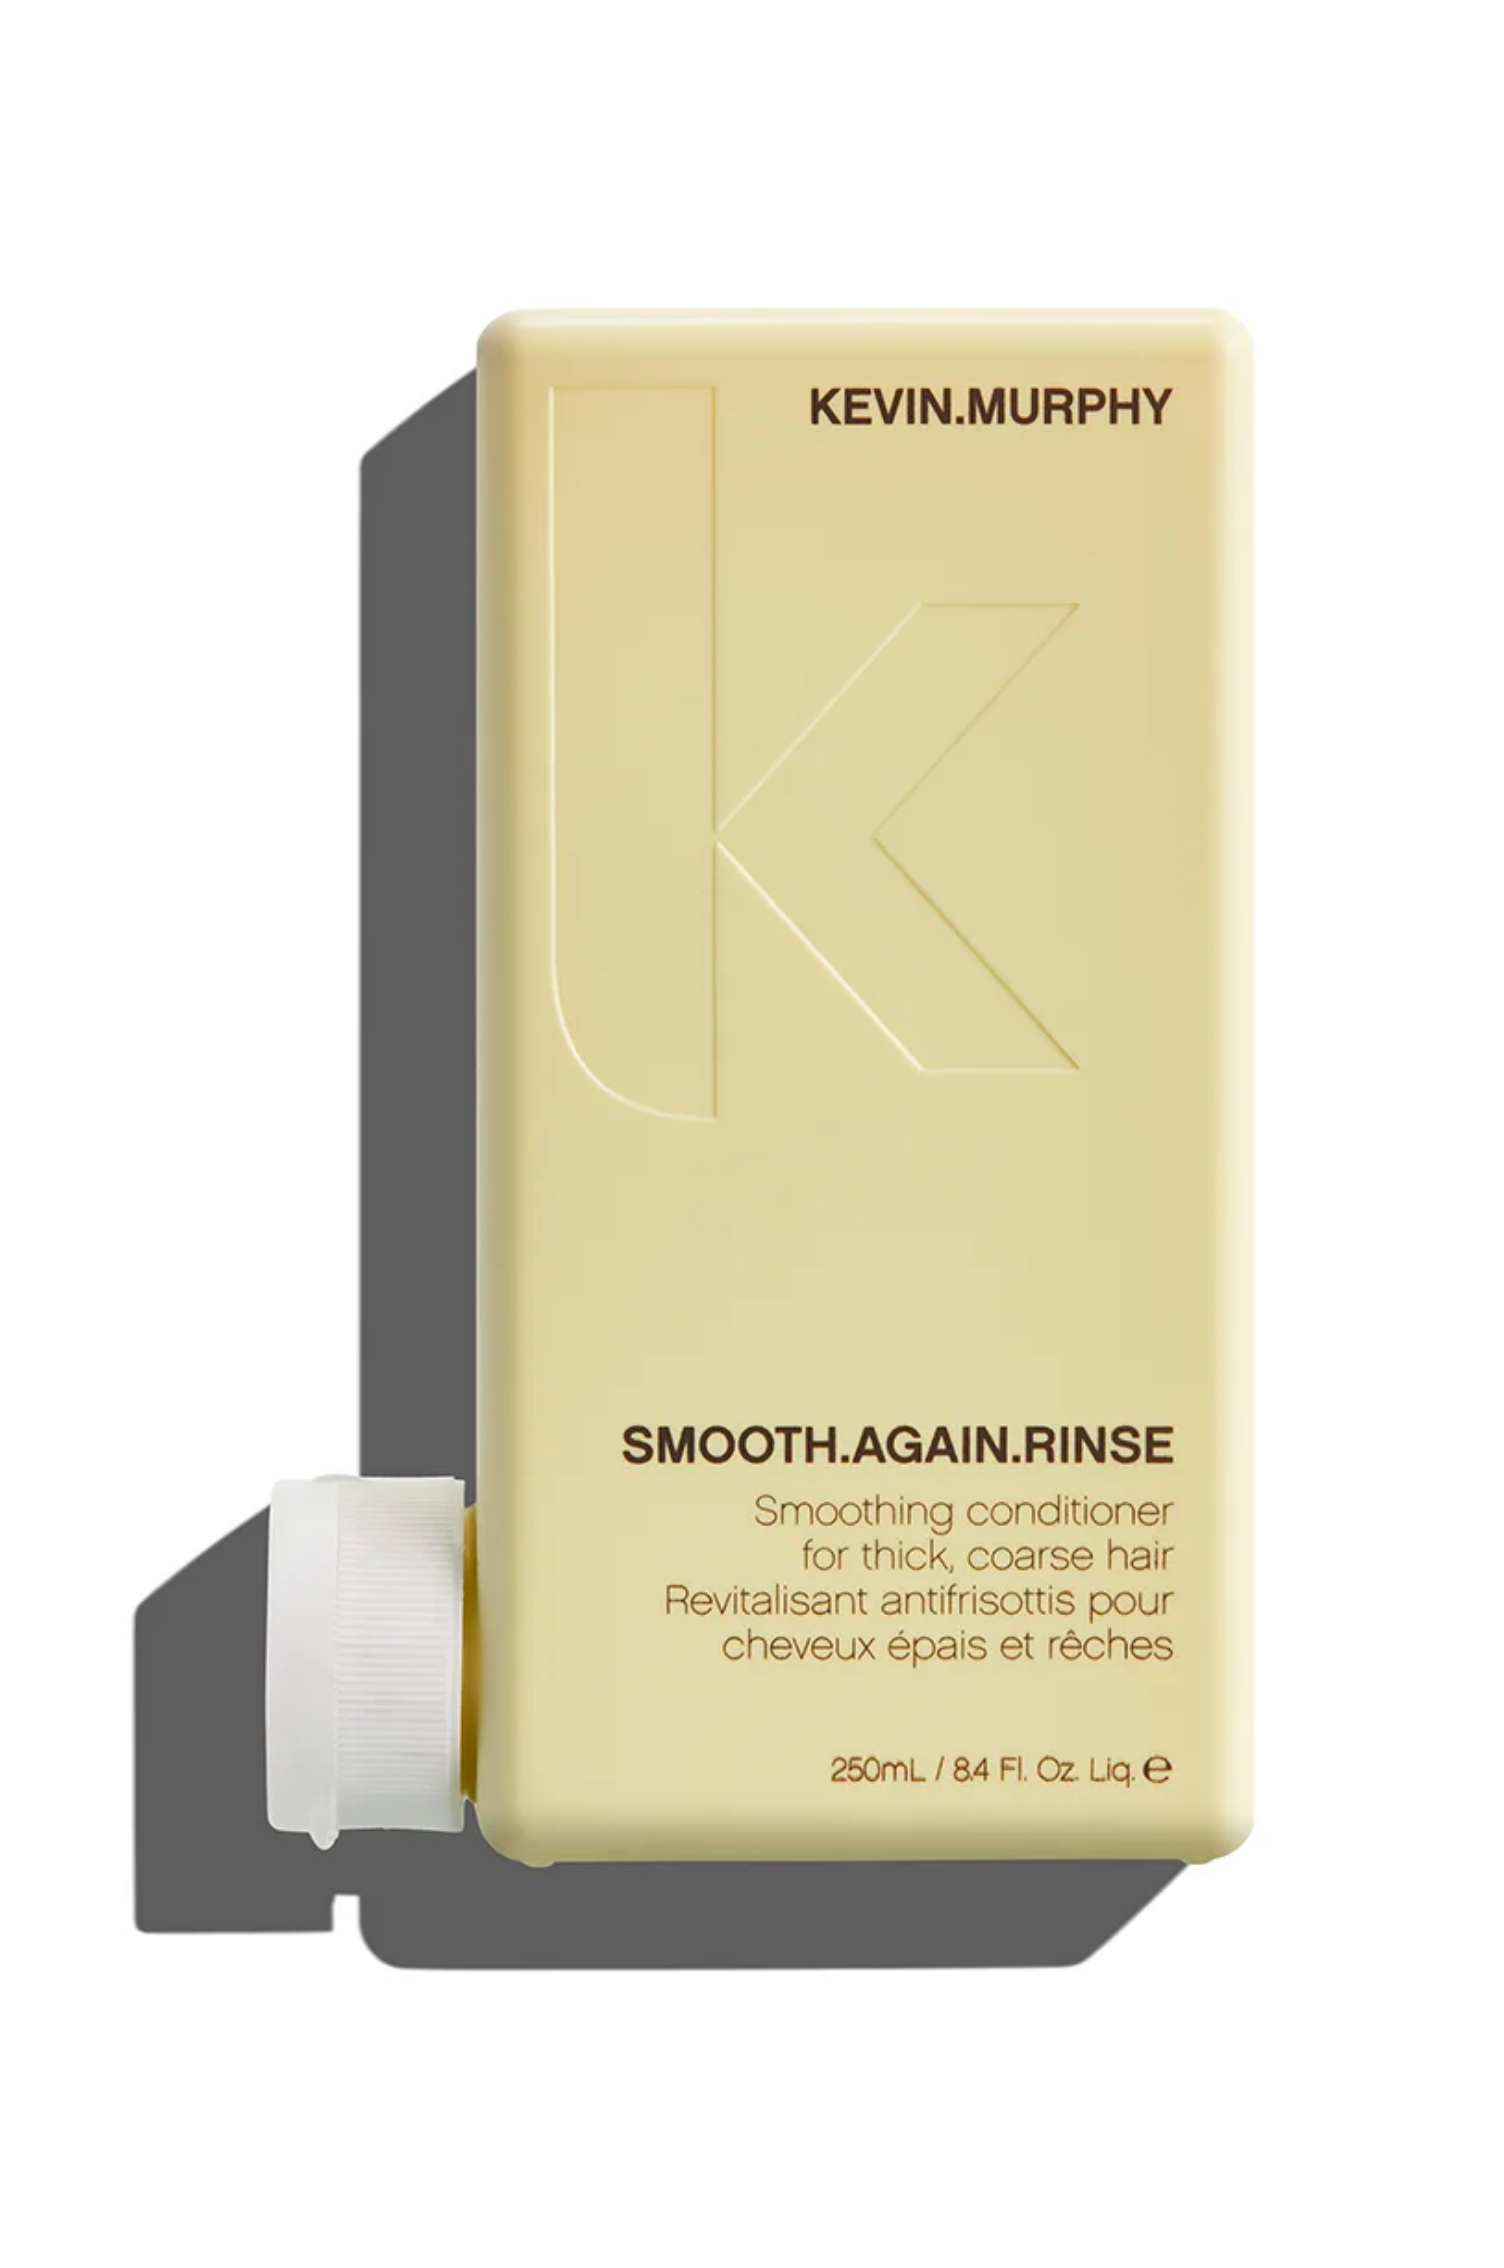 Après-shampooing revitalisant antifrisottis pour cheveux épais et rêches Kevin Murphy Smooth Again Rinse - Crème Salon